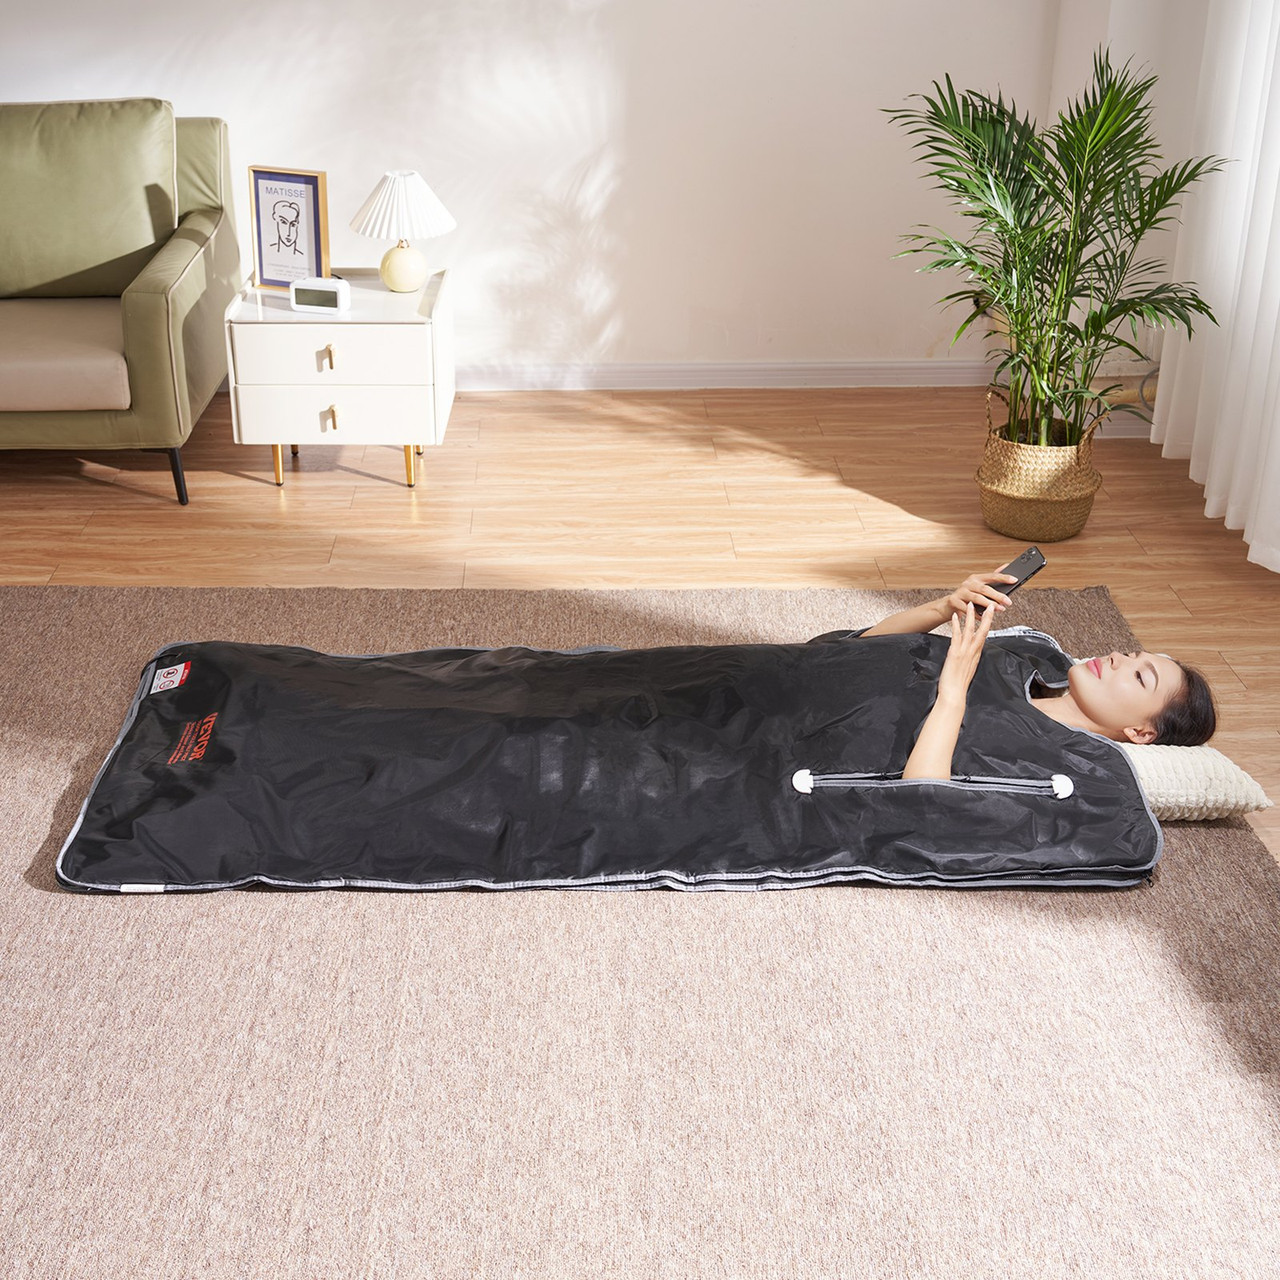 VEVOR Sauna Blanket for Detoxification, Portable Far Infrared Sauna for Home, Oxford Sauna Bag w/ Arm Holes & Carbon Fiber Heating, 1-6 Level Adjustable Temp 95-176?, 5-60 Minutes Timer, 71 x 31 in